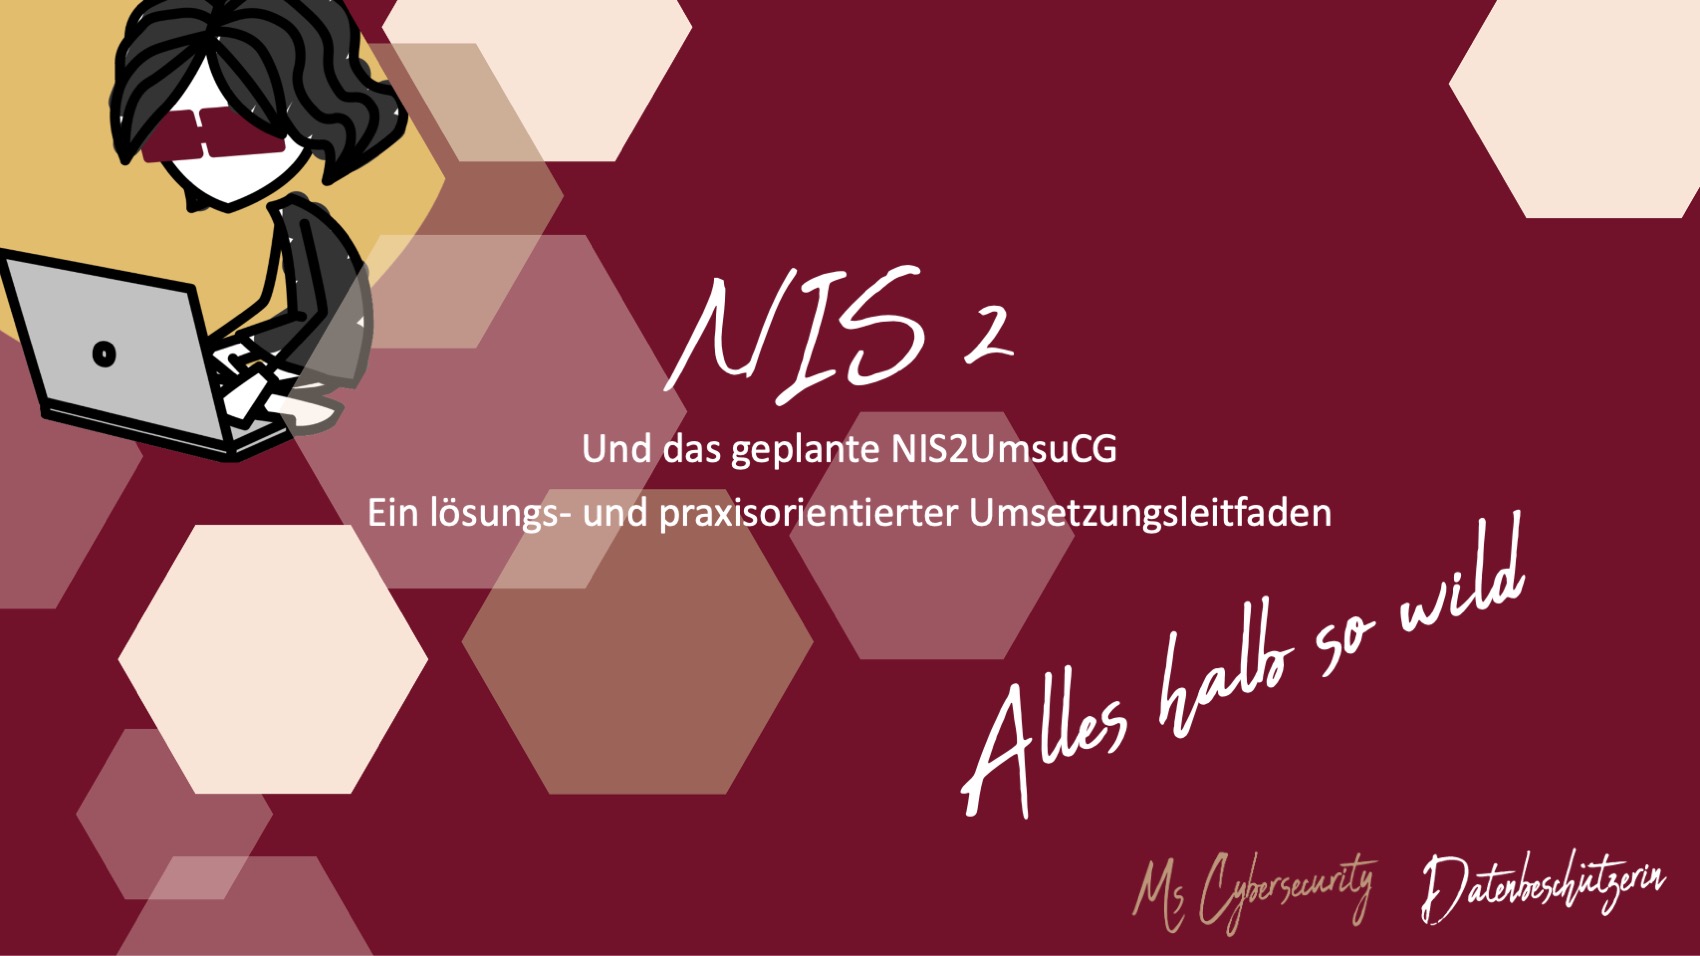 Unterlagen zum NIS-2 Webinar